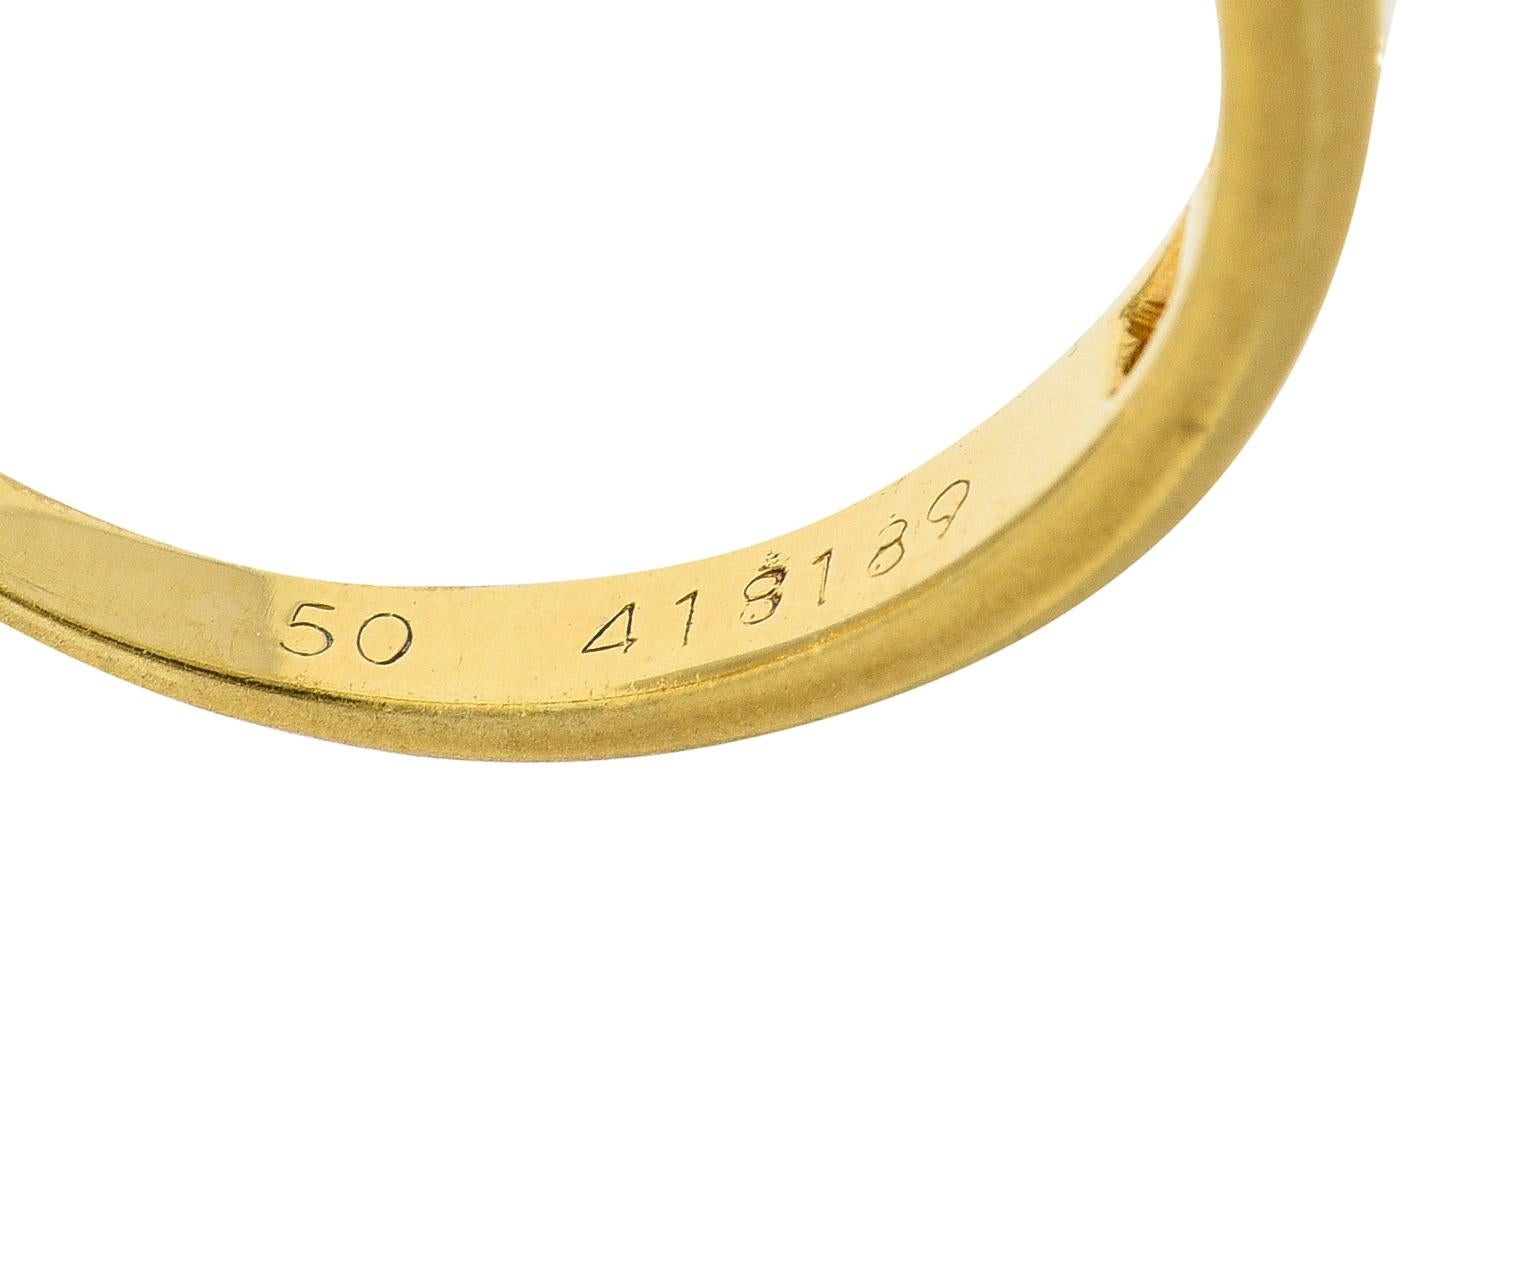 Cartier Contemporary 0.48 Carat Diamond 18 Karat Yellow Gold Band Ring 2